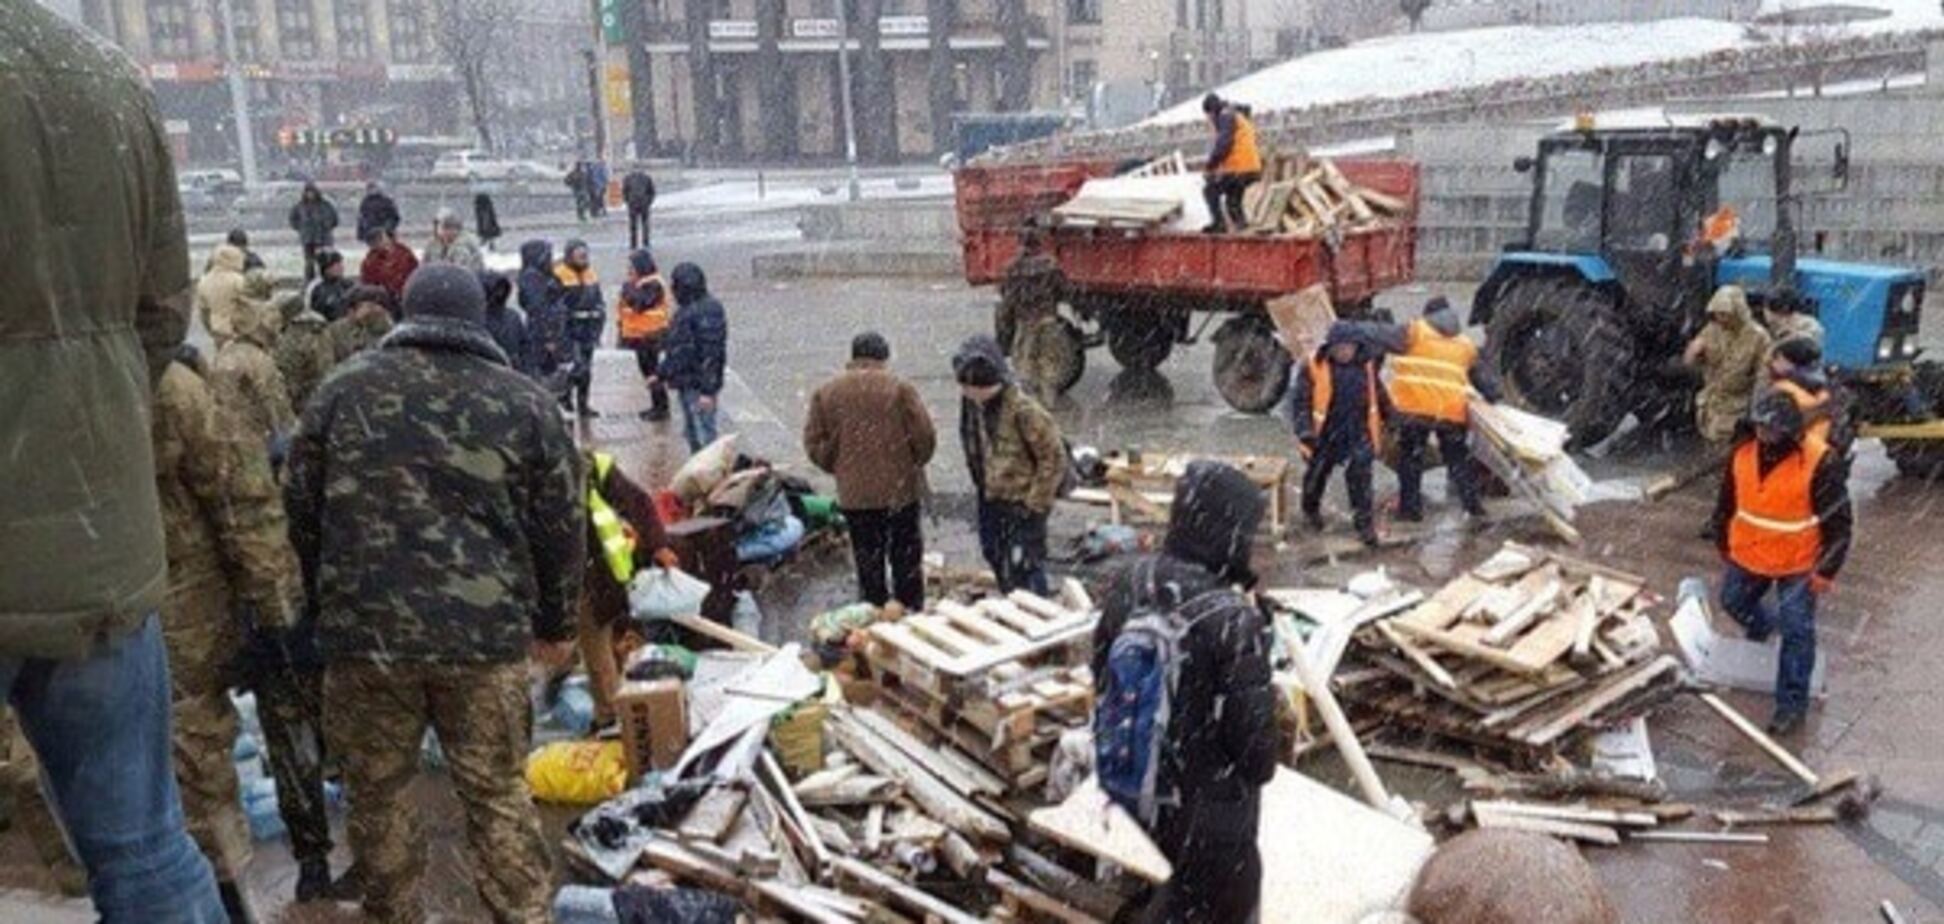 На Майдане 'революционеры' забыли ленты для инкассации денег: опубликованы фото